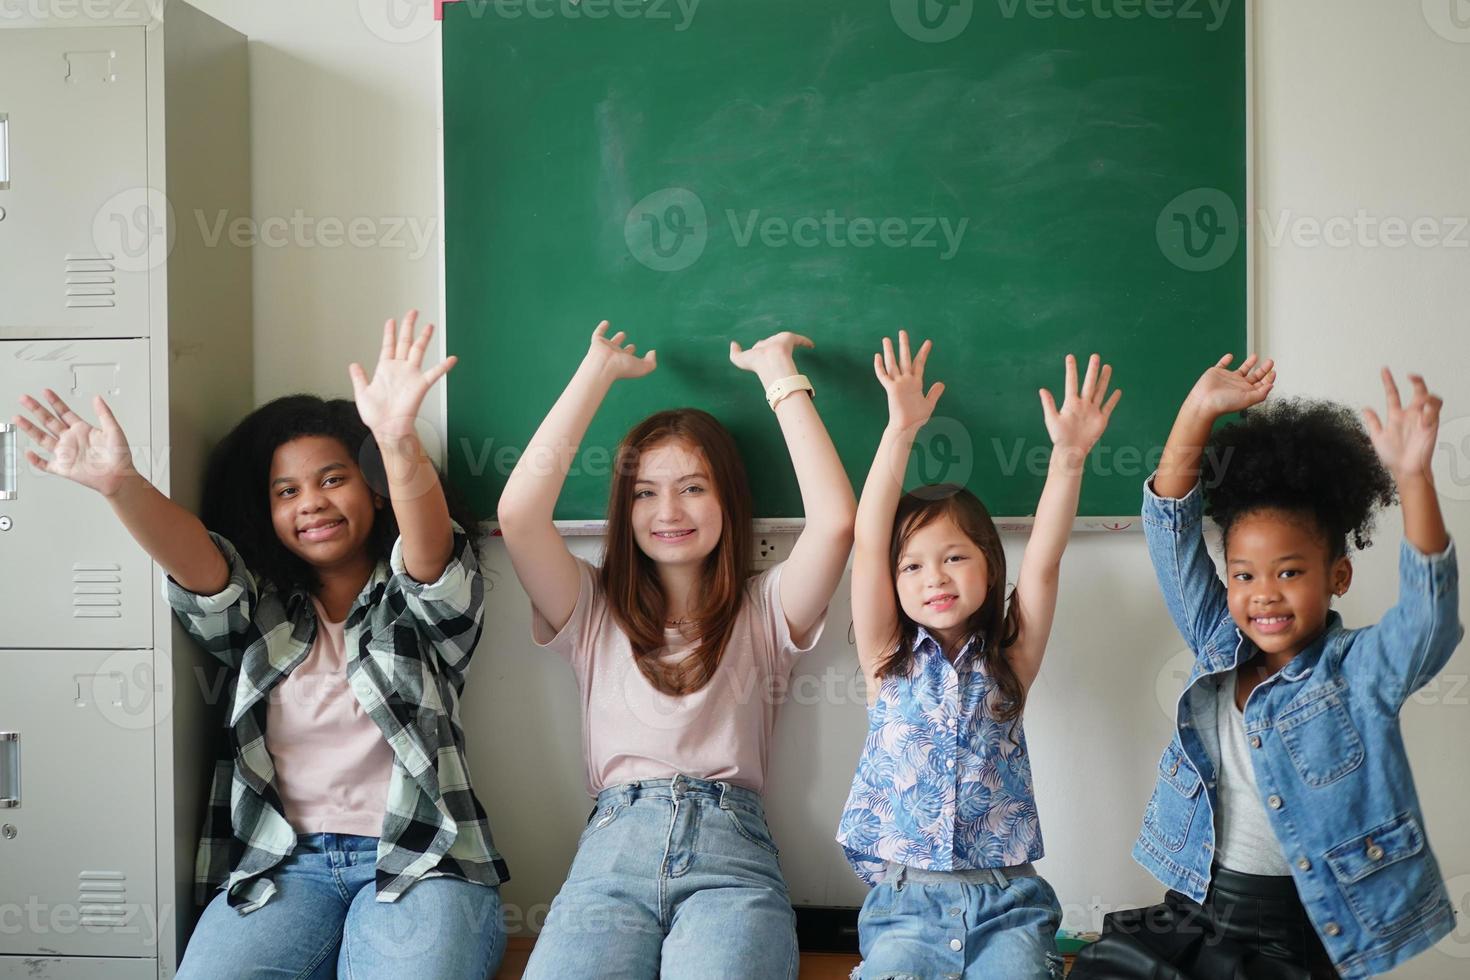 gelukkige kleine meisjes tegen schoolbord met terug naar school foto